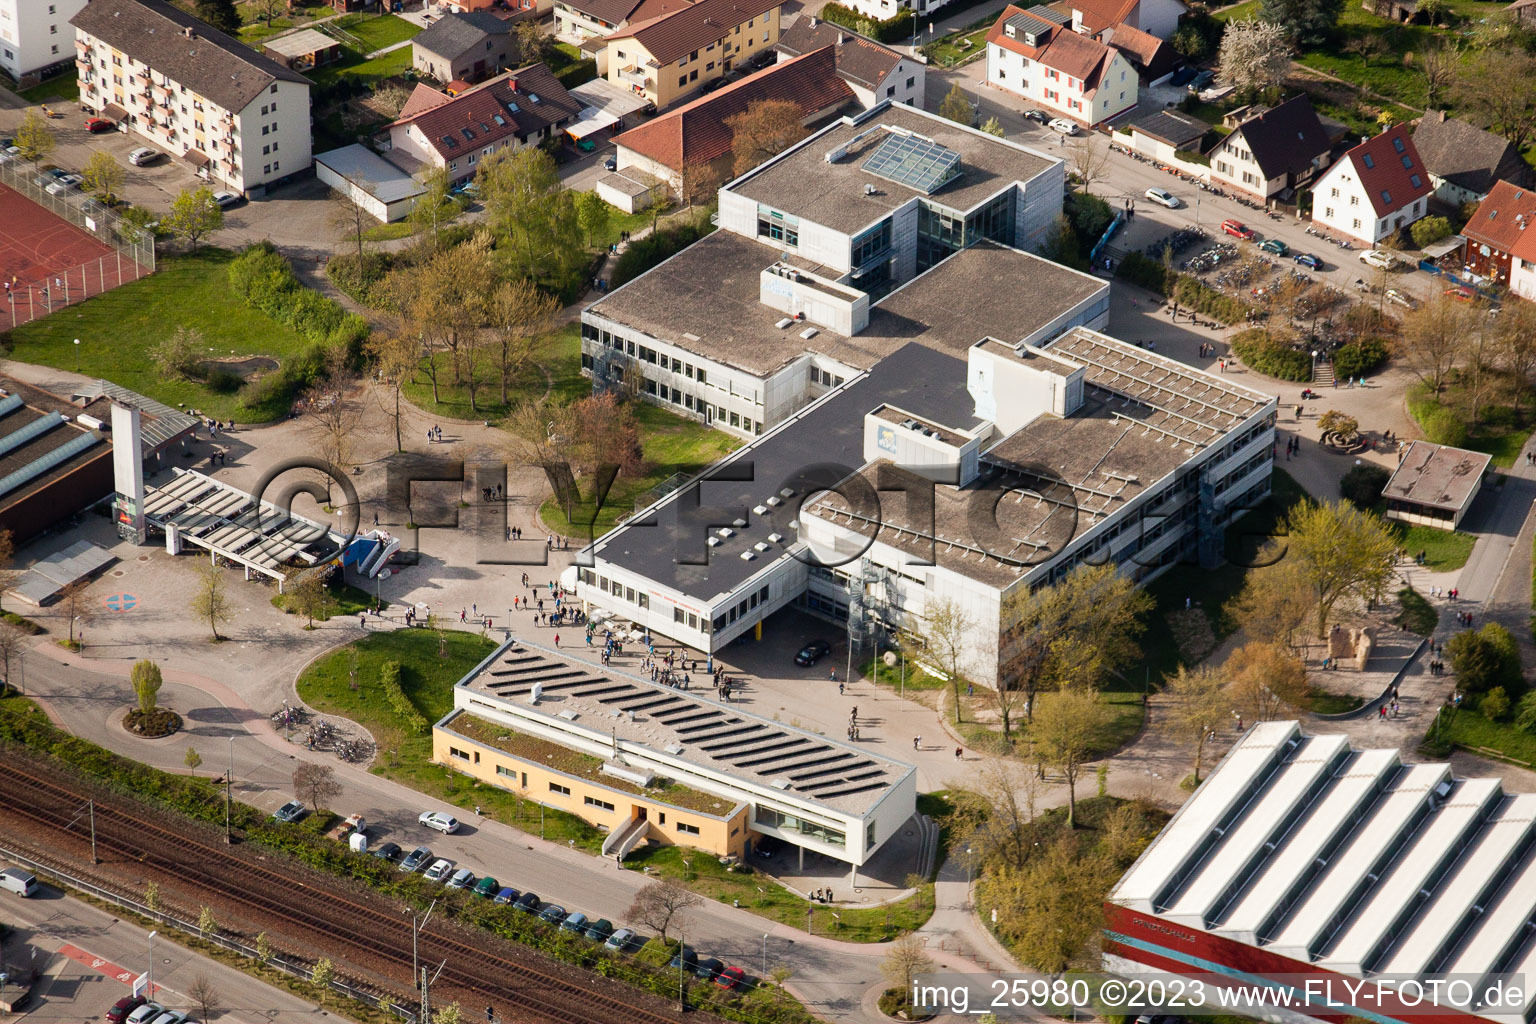 Ludwig-Marum-Gymnasium Pfinztal à le quartier Berghausen in Pfinztal dans le département Bade-Wurtemberg, Allemagne depuis l'avion